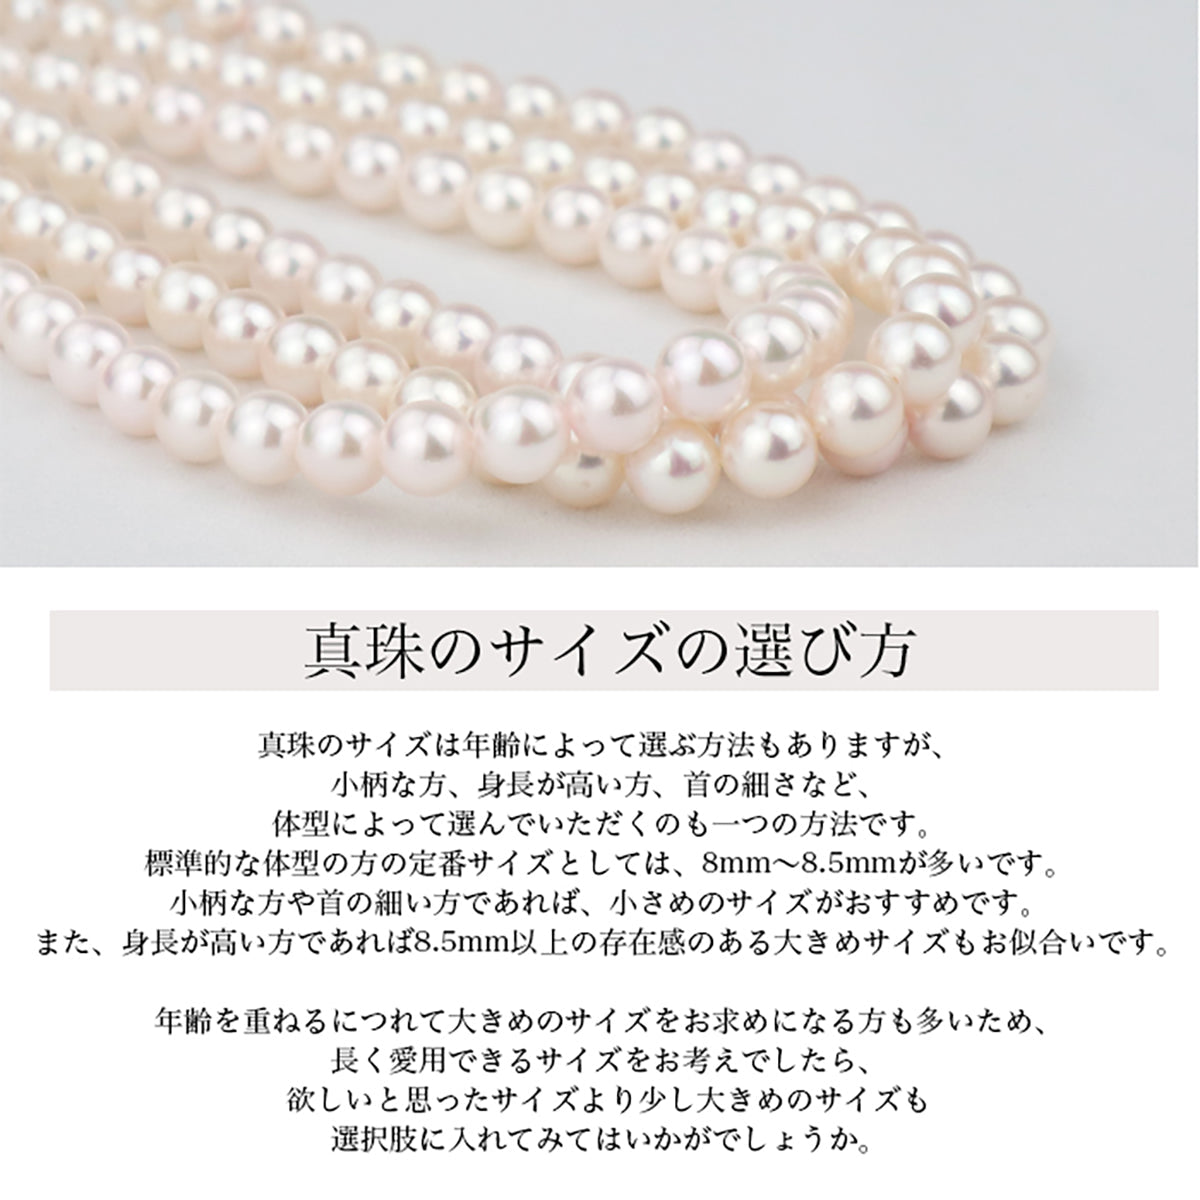 Akoya 珍珠正装项链 2 件套 [7.5-8.0 毫米]（含耳环）常规尺寸正装套装，带真品证书和储物盒